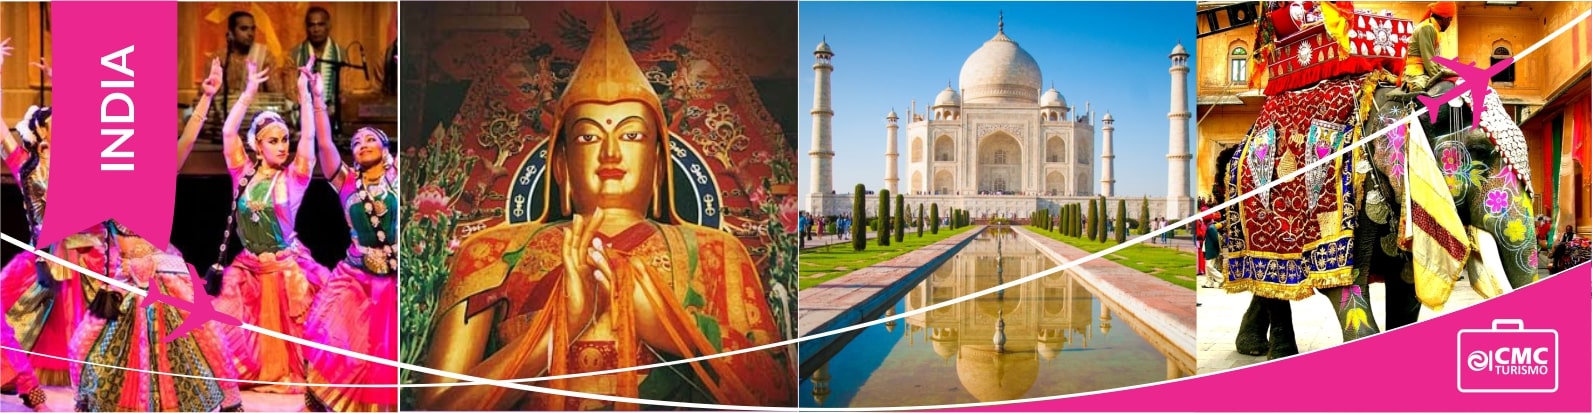 cabecera para pdf excursiones India CMC Turismo-min